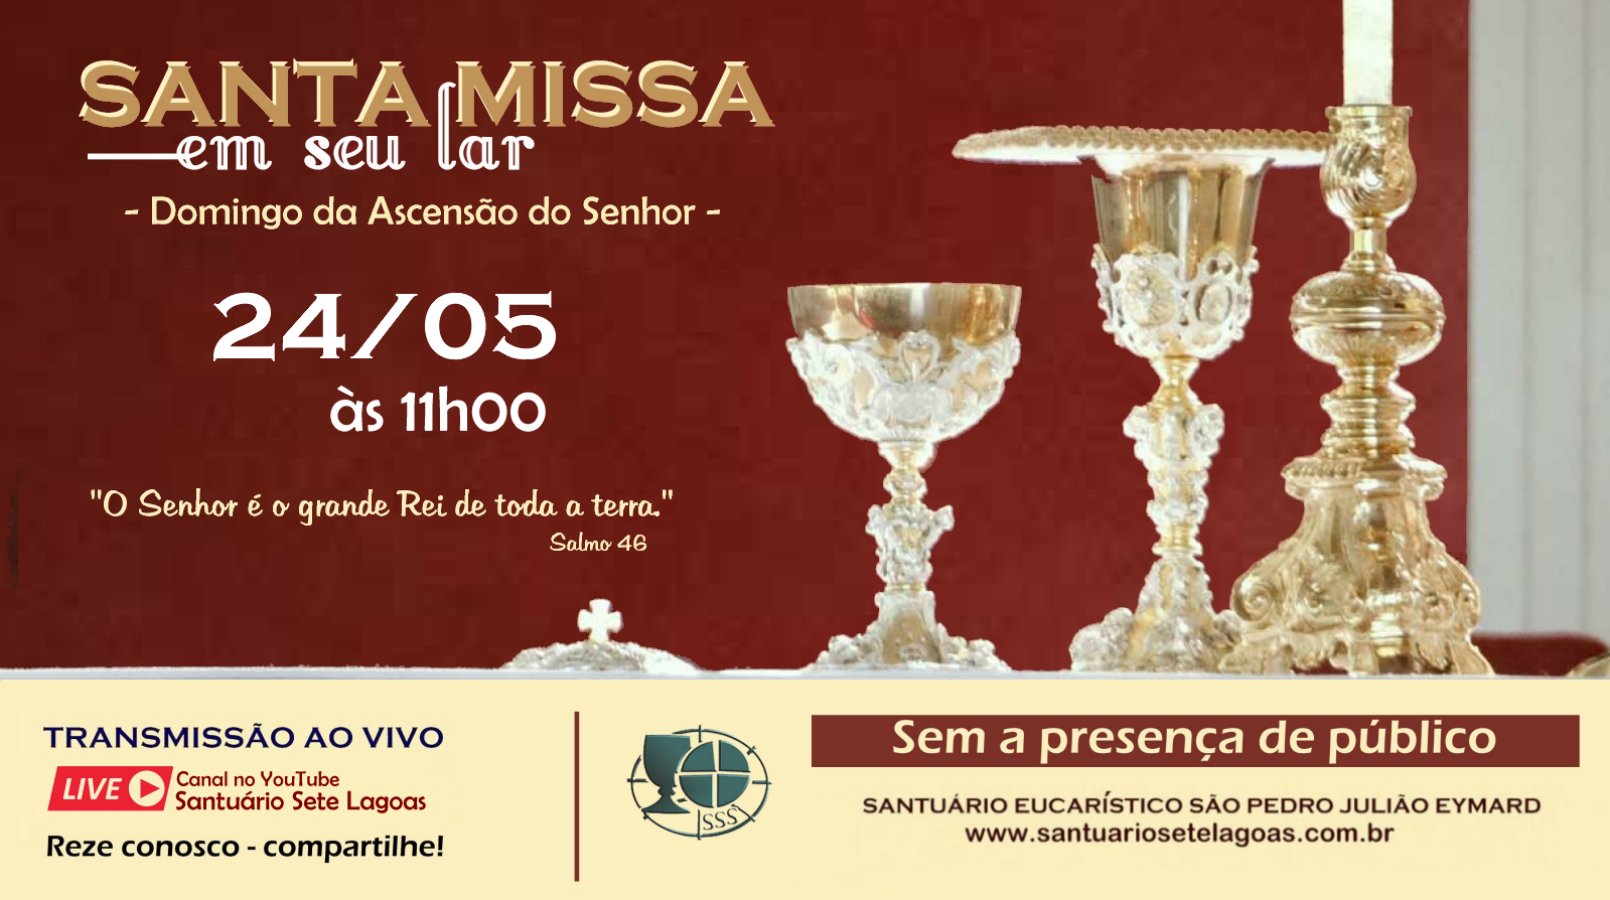 Santa Missa com transmissão ao vivo, domingo dia 24/05. Participe!